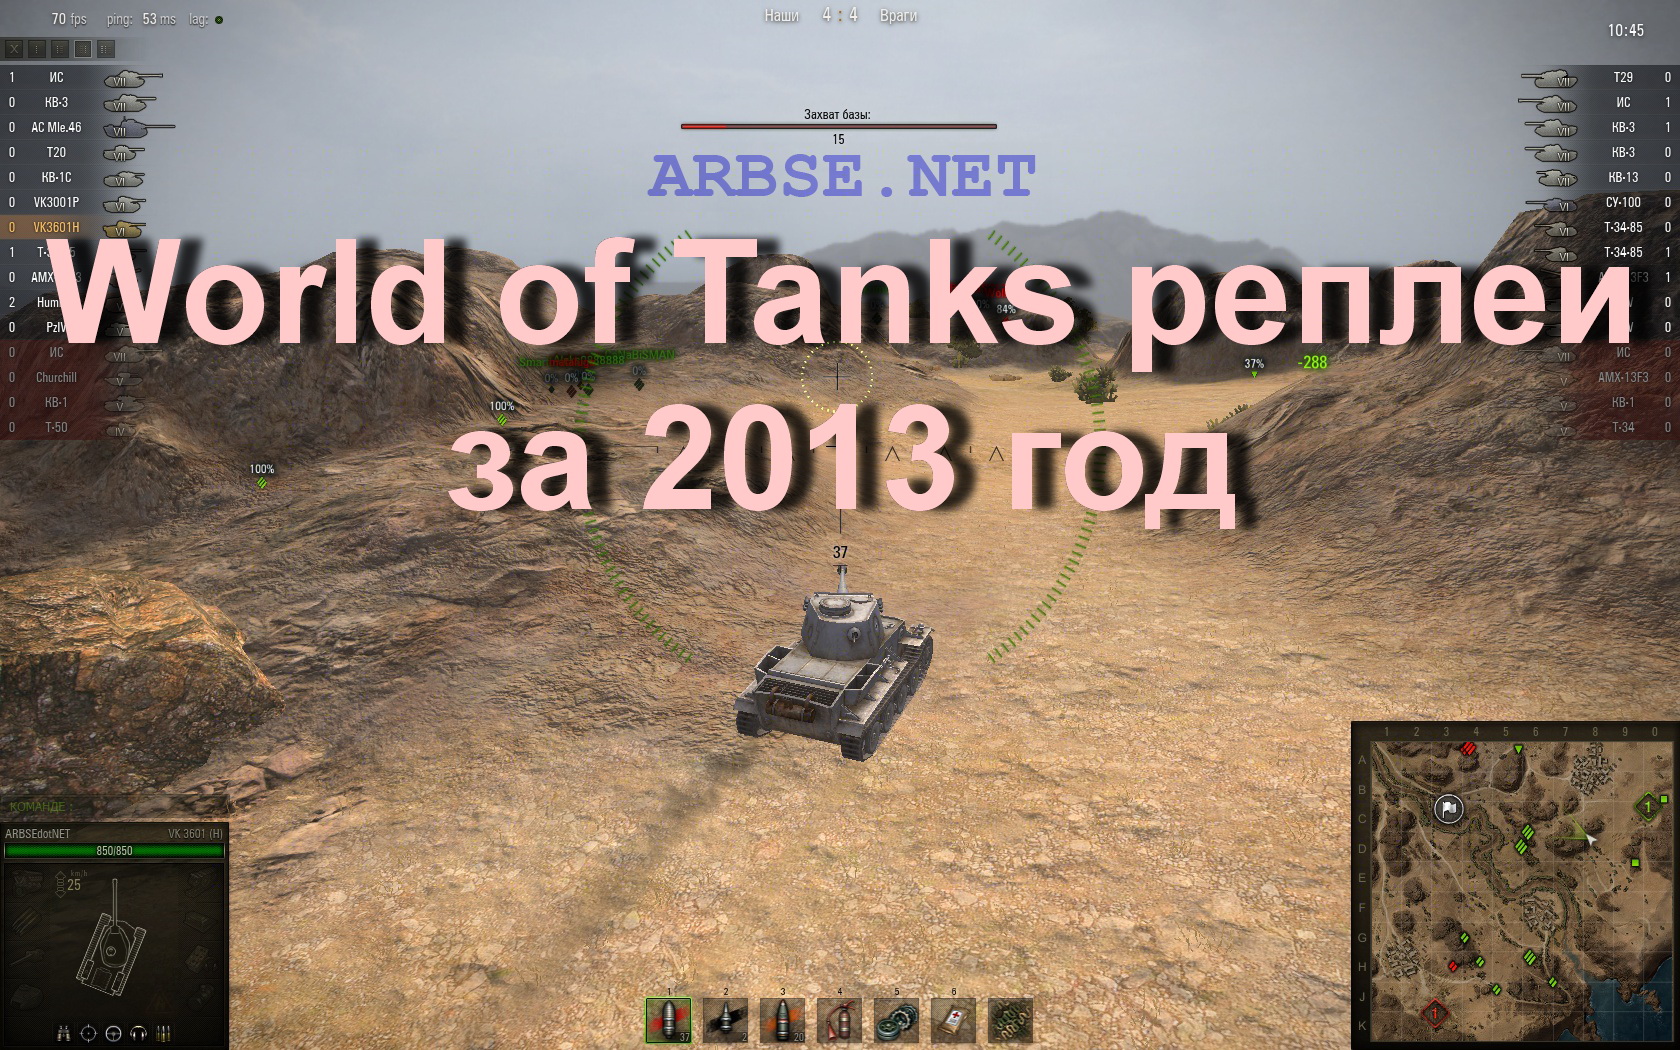 Как работает реплей мод. Реплей в World of Tanks. Ворлд оф танк реплеи. Старые реплеи World of Tanks ВК.